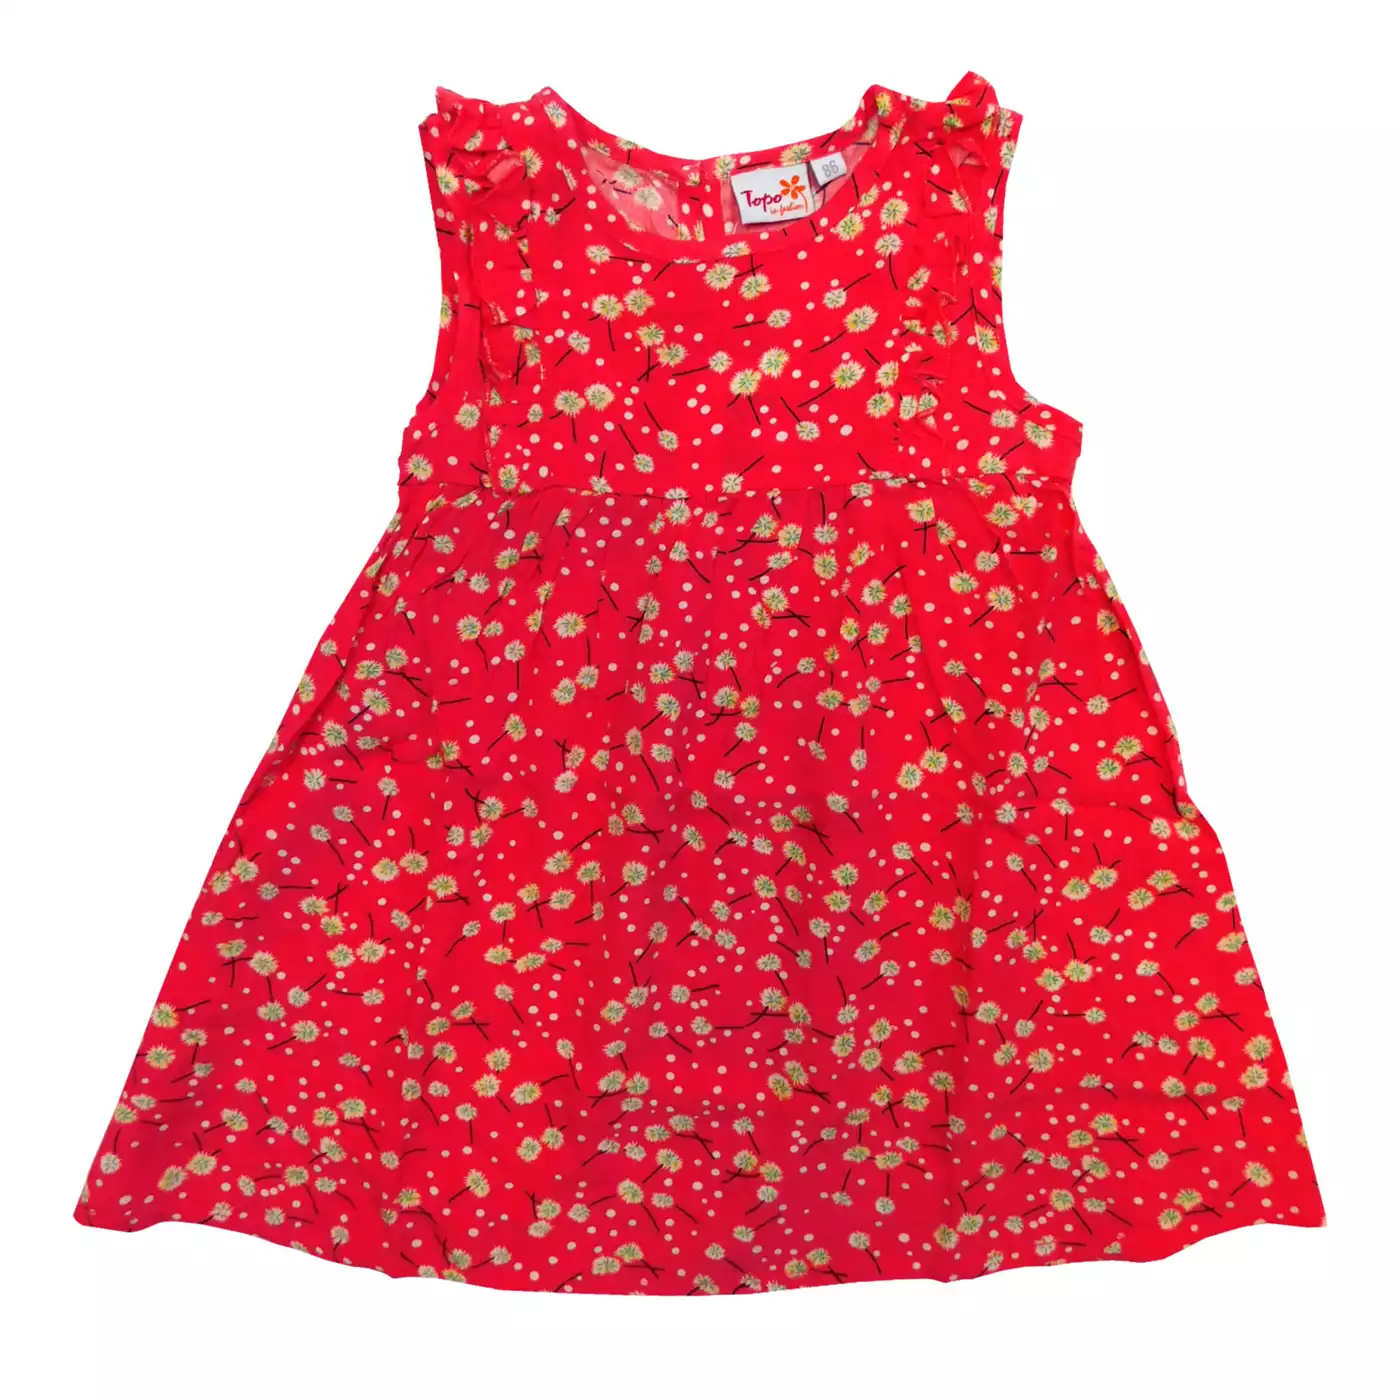 Kleid Blumen Topo Rot M2006580324114 1